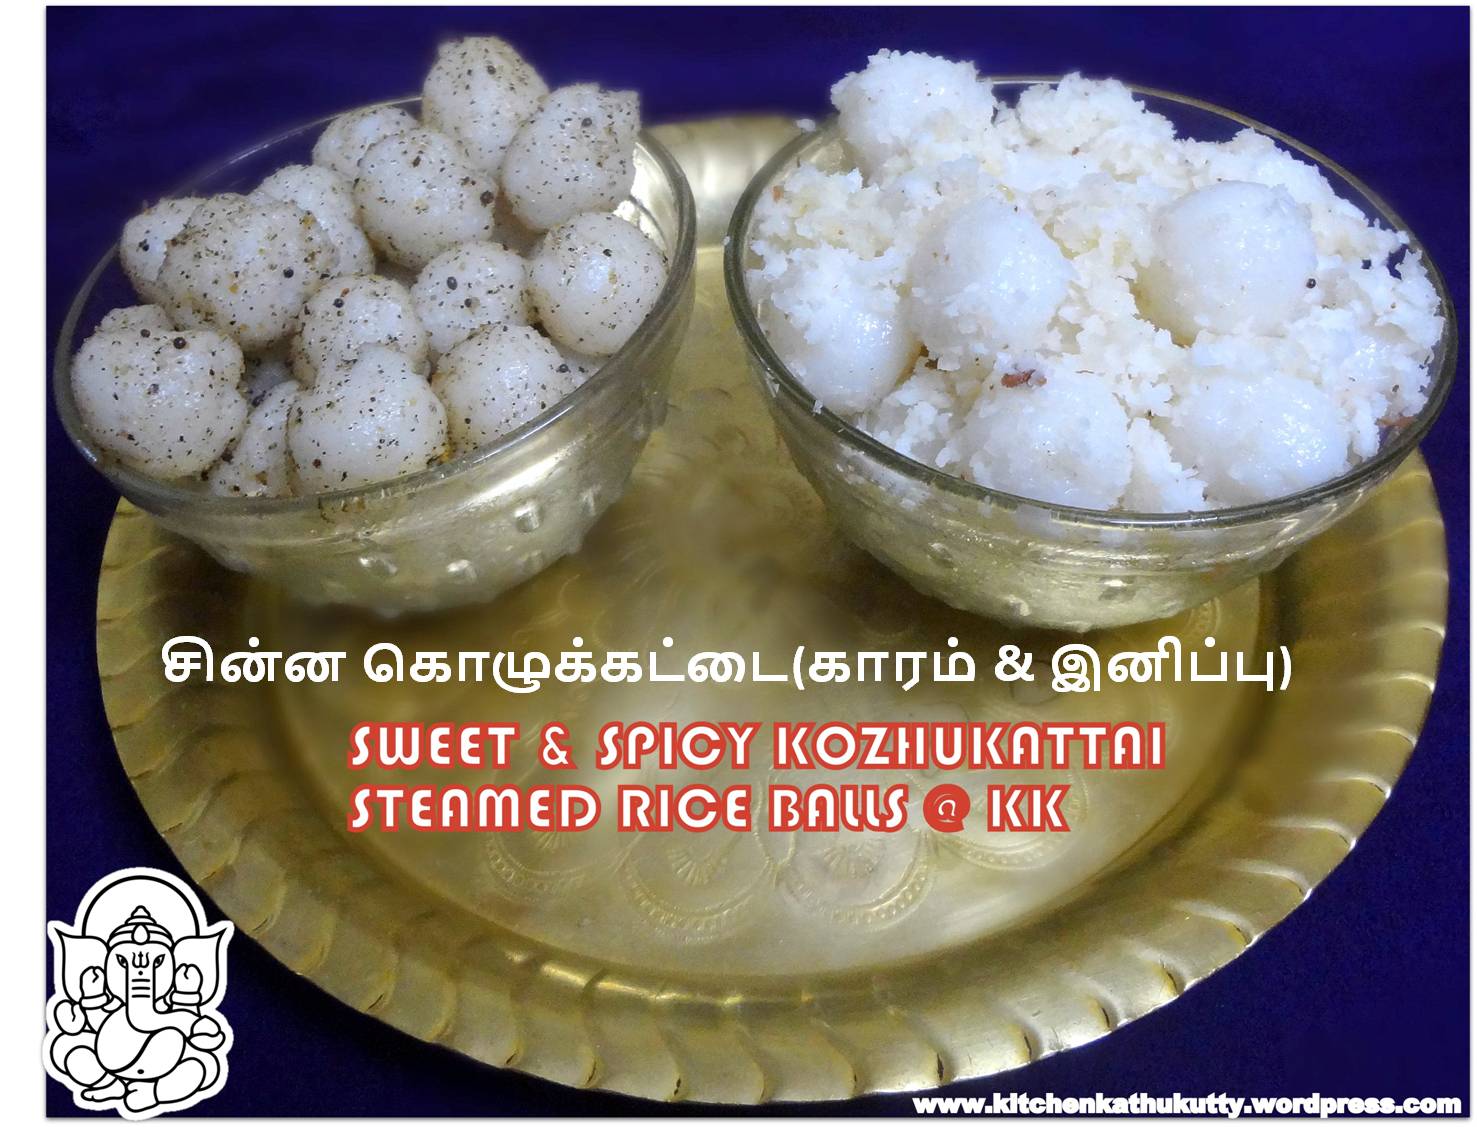 Sweet & Spicy Kozhukkattai